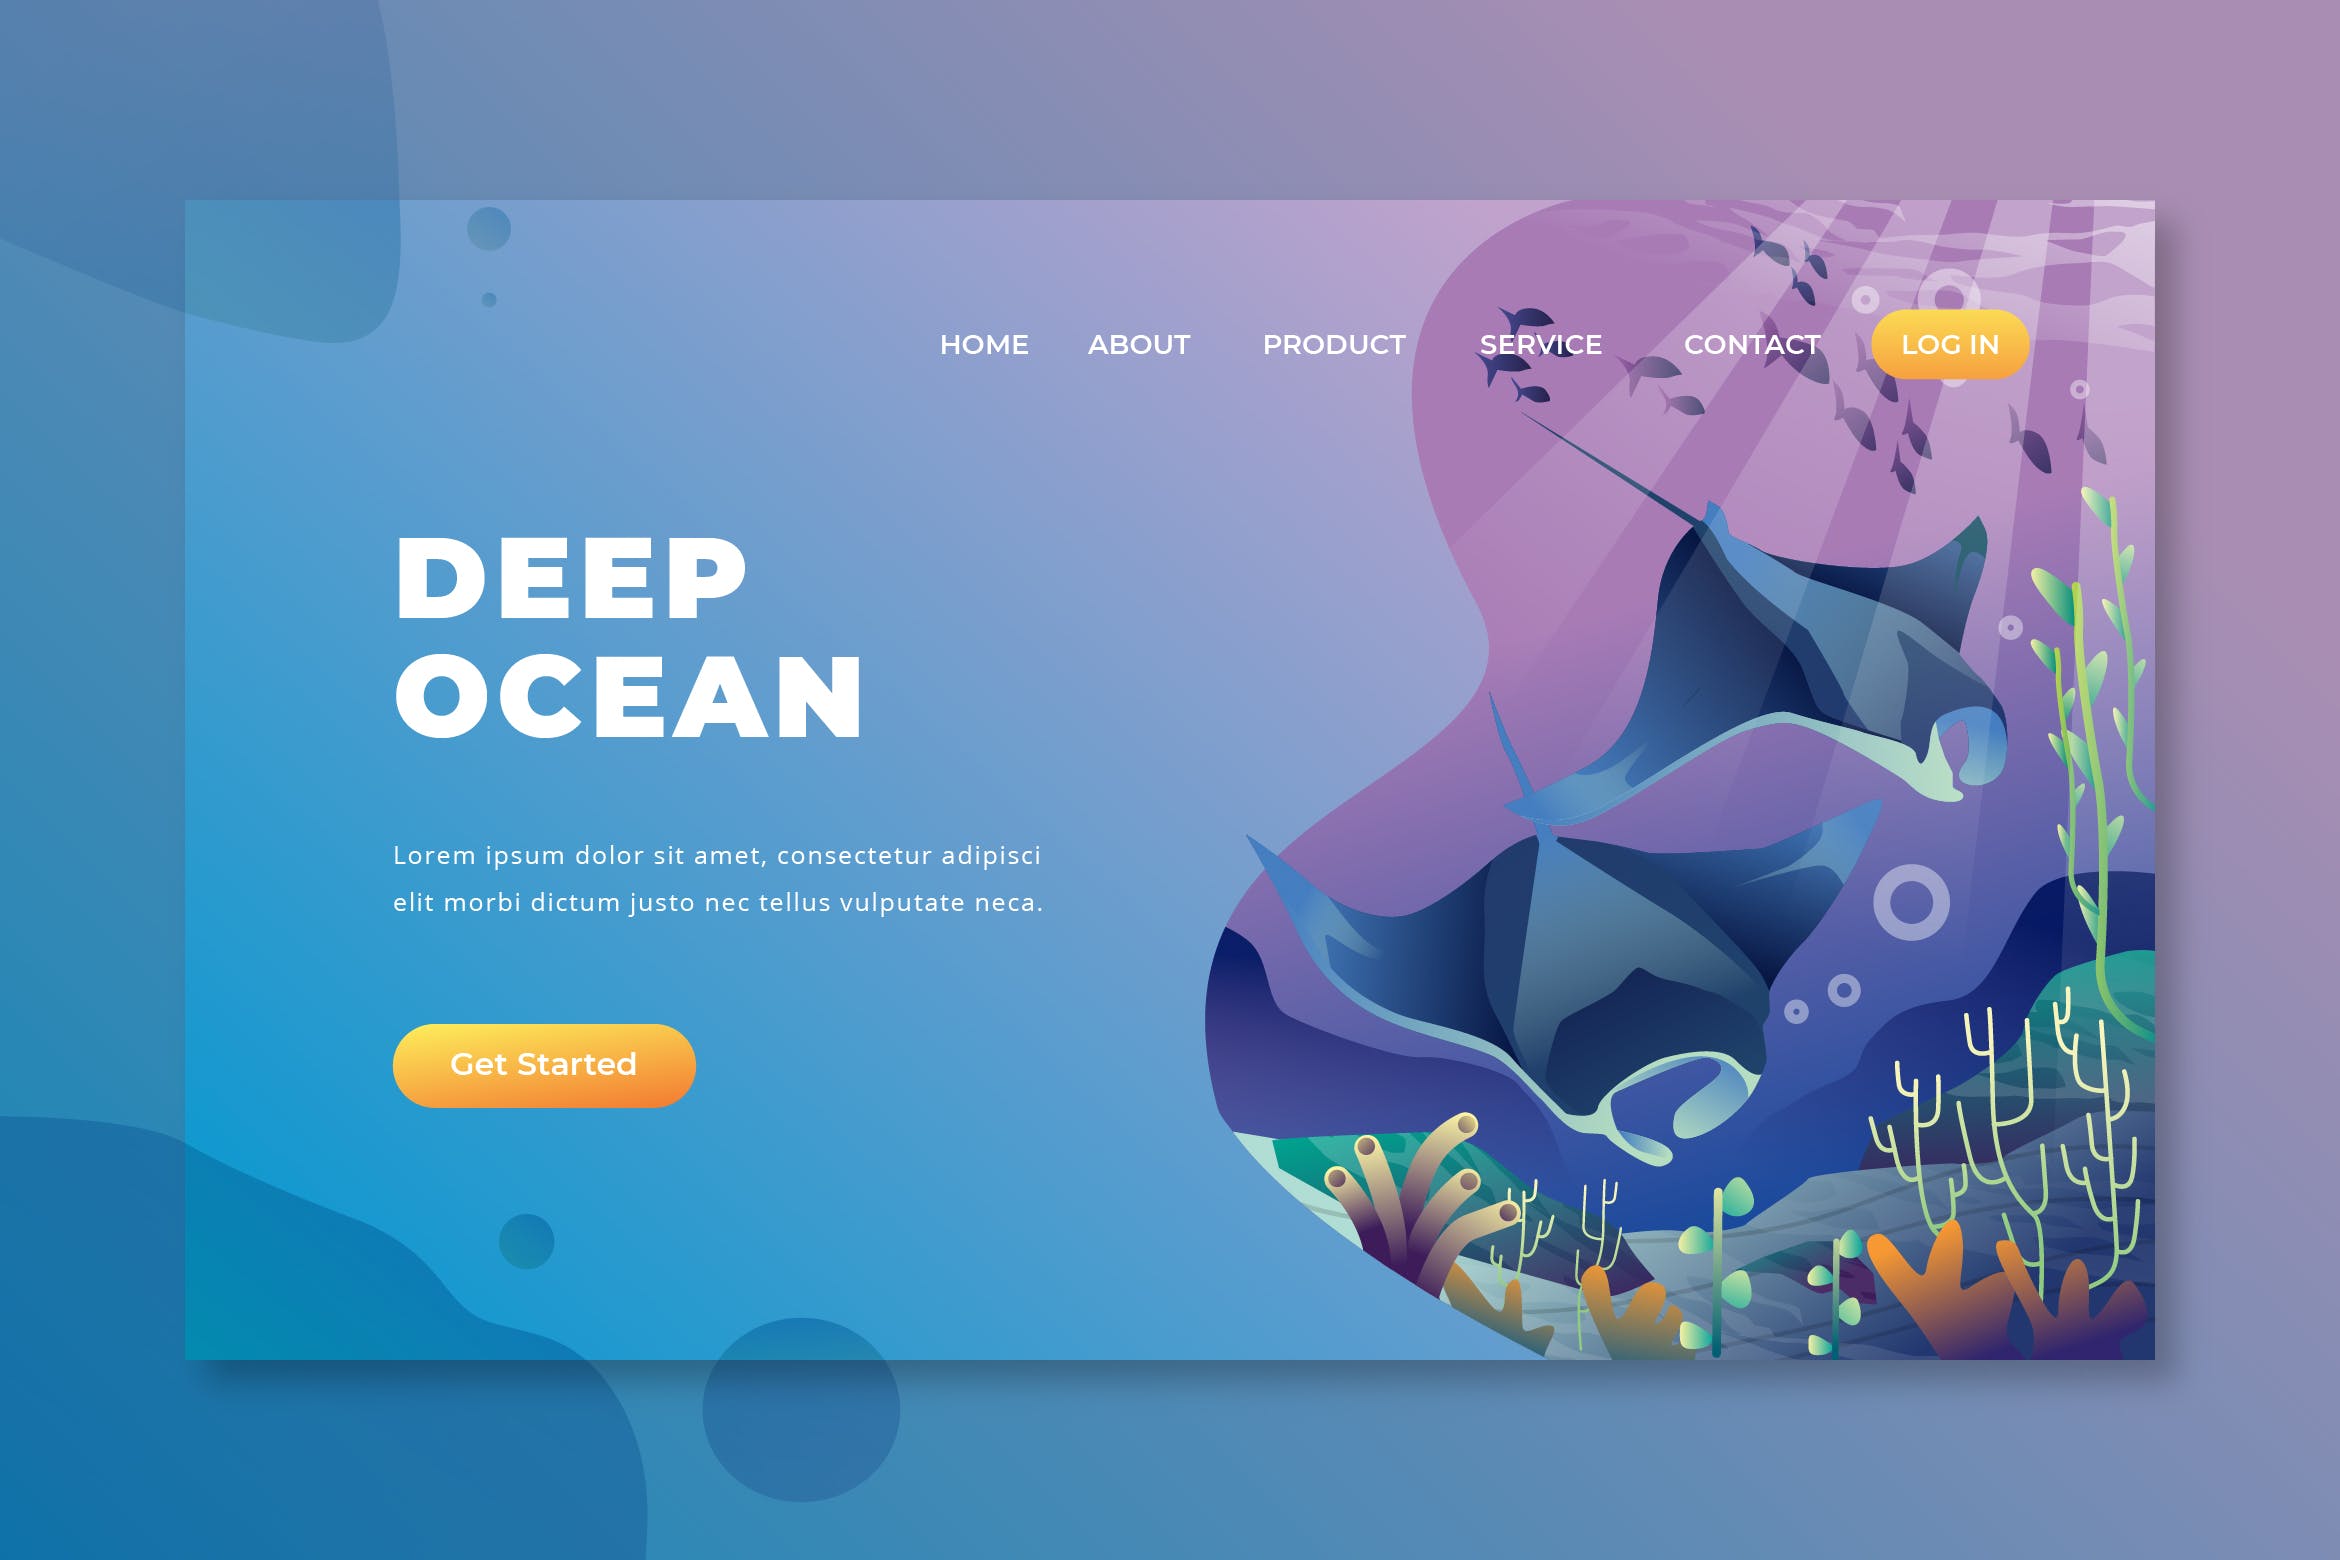 深海海洋主题插画网站着陆页设计第一素材精选模板 Deep Ocean – PSD and AI Vector Landing Page插图